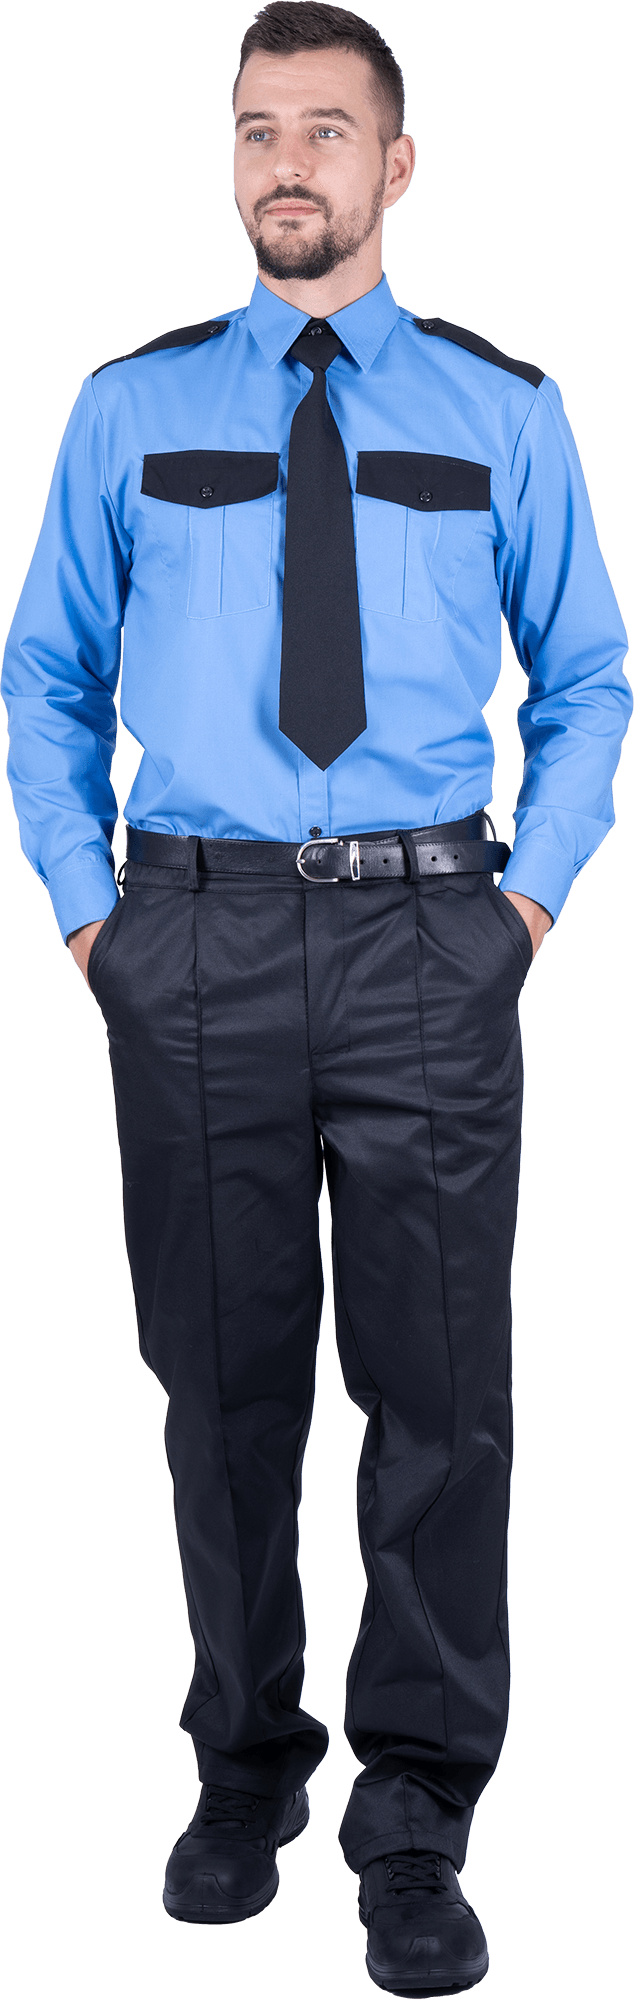 Сорочка для охраны ОХРАННИКА мужская цв. голубой длинный рукав